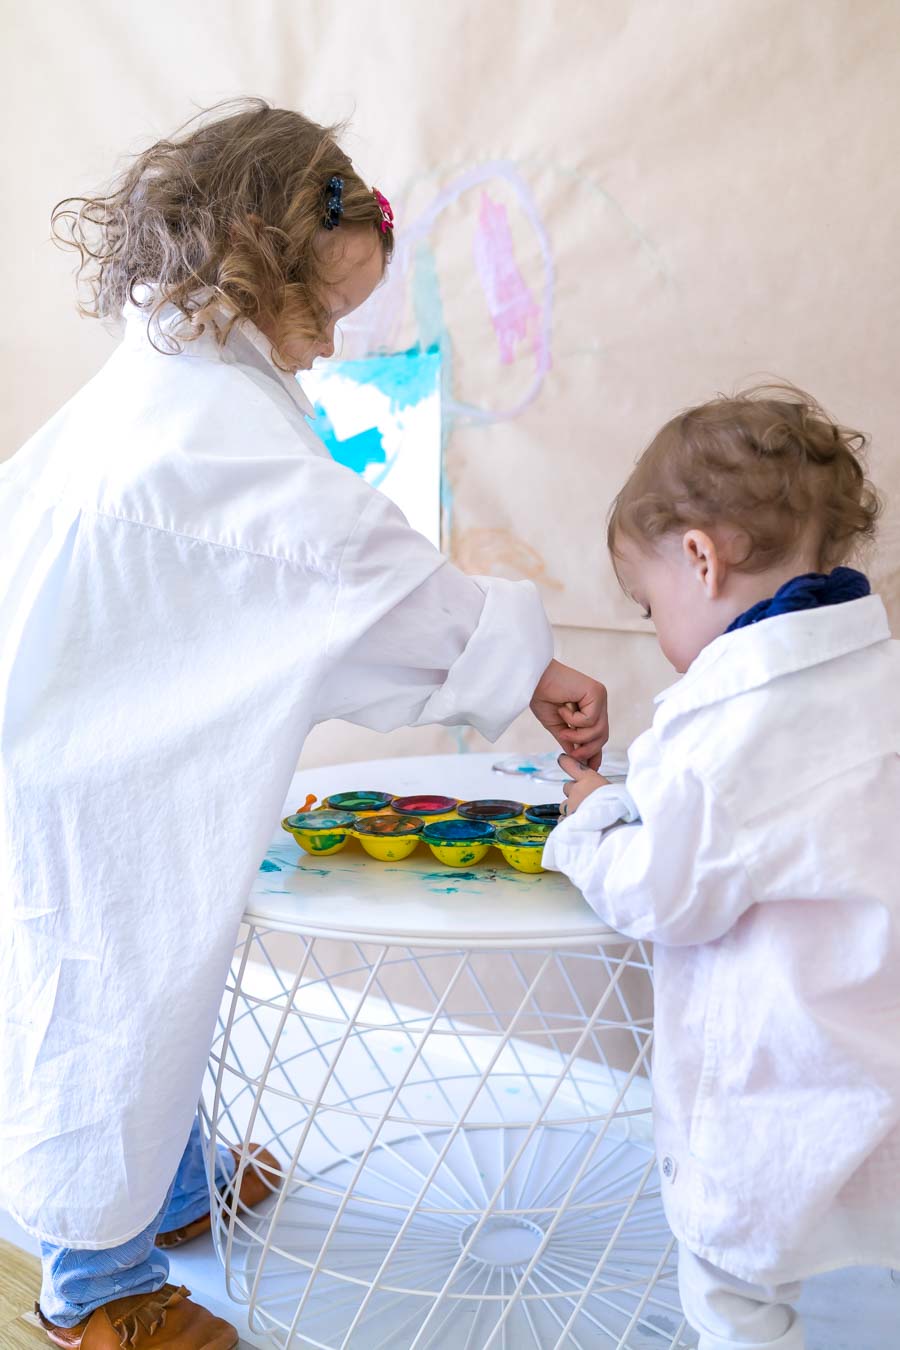 Malen im Stehen: Unsere Malwand und Kreativecke für Kinder. Mit einem IKEA-Hack könnt ihr eine Malecke in einem Kinderzimmer oder in der Kita einrichten und Malzubehör einrichten. Mehr unter: www.chezmamapoule.com #Bastelecke #Malecke #Kreativecke #Bastelsachen #Malsachen #Malaterlier #Malort #zuHause #Malzimmer #Kinderzimmer #Bastelecke #einrichten #organisieren #Kita #Kleinkind #Kunstbereich #Basteln #Malwand #Malzubehör #Malbereich #Kreativbereich #IKEAhack #Bekvam #Gewürzregal